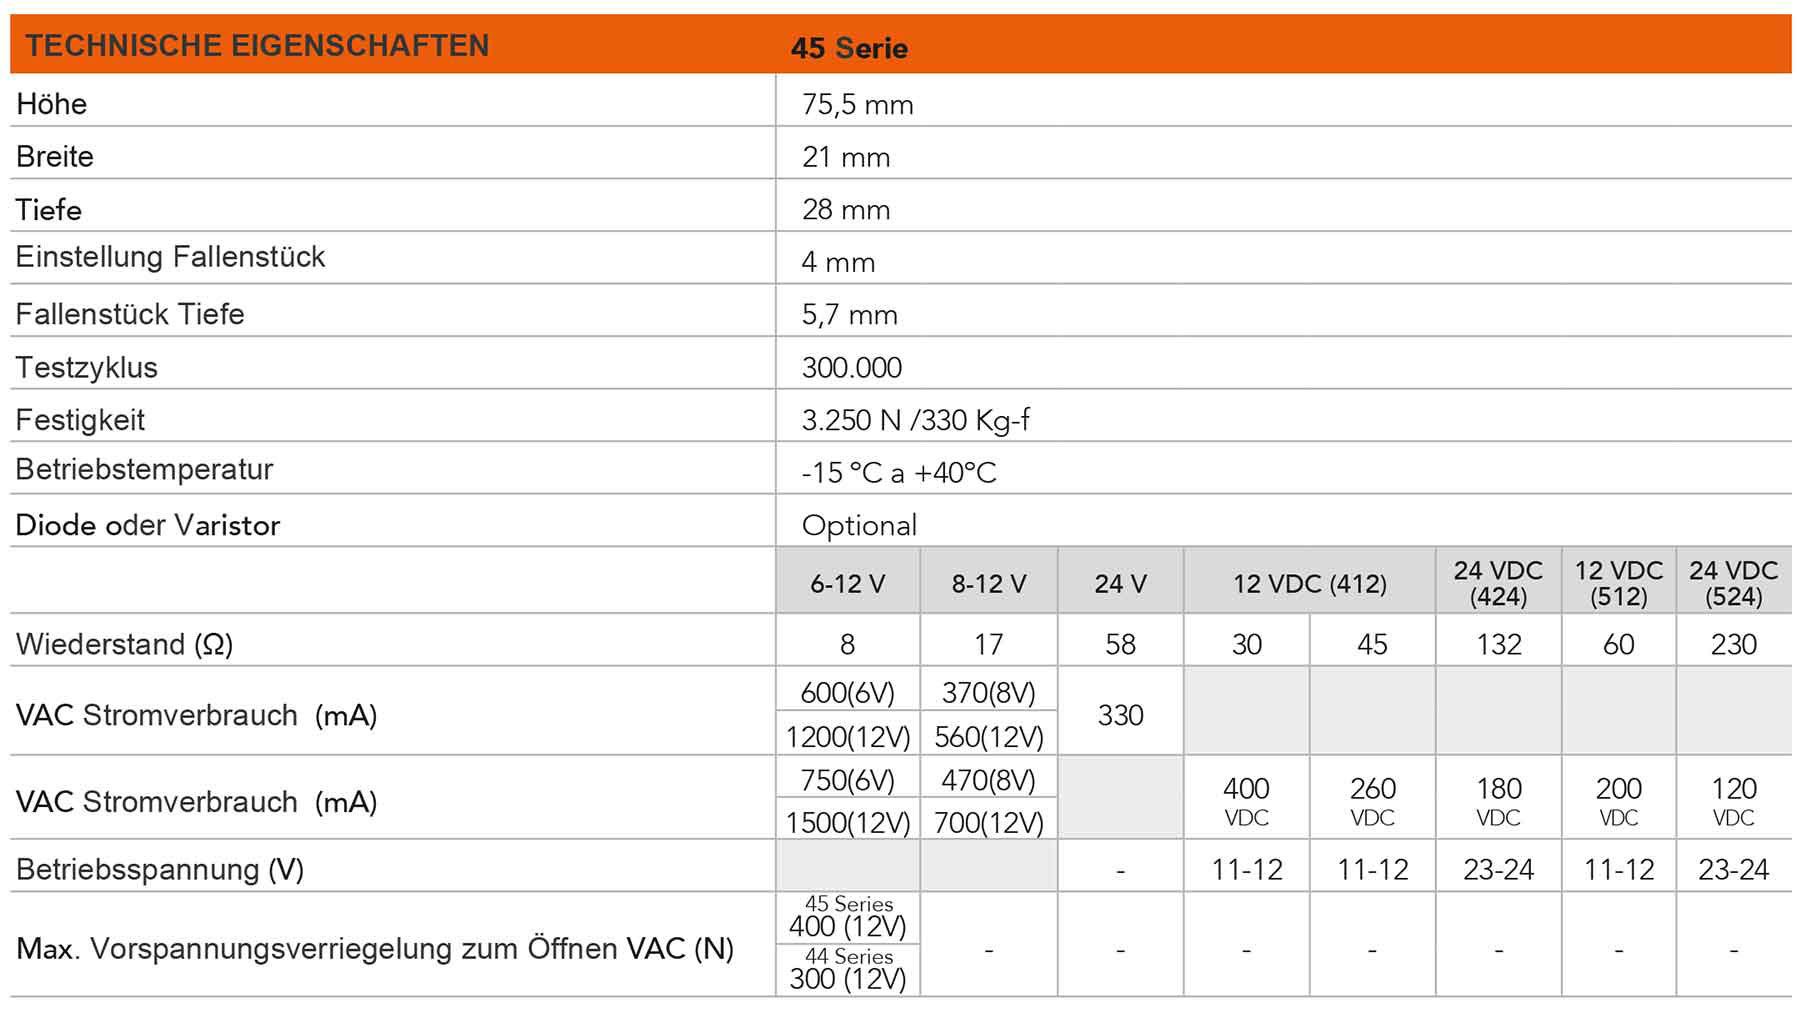 Tabelle der technischen Eigenschaften des elektrischen Türöffners der Serie 45